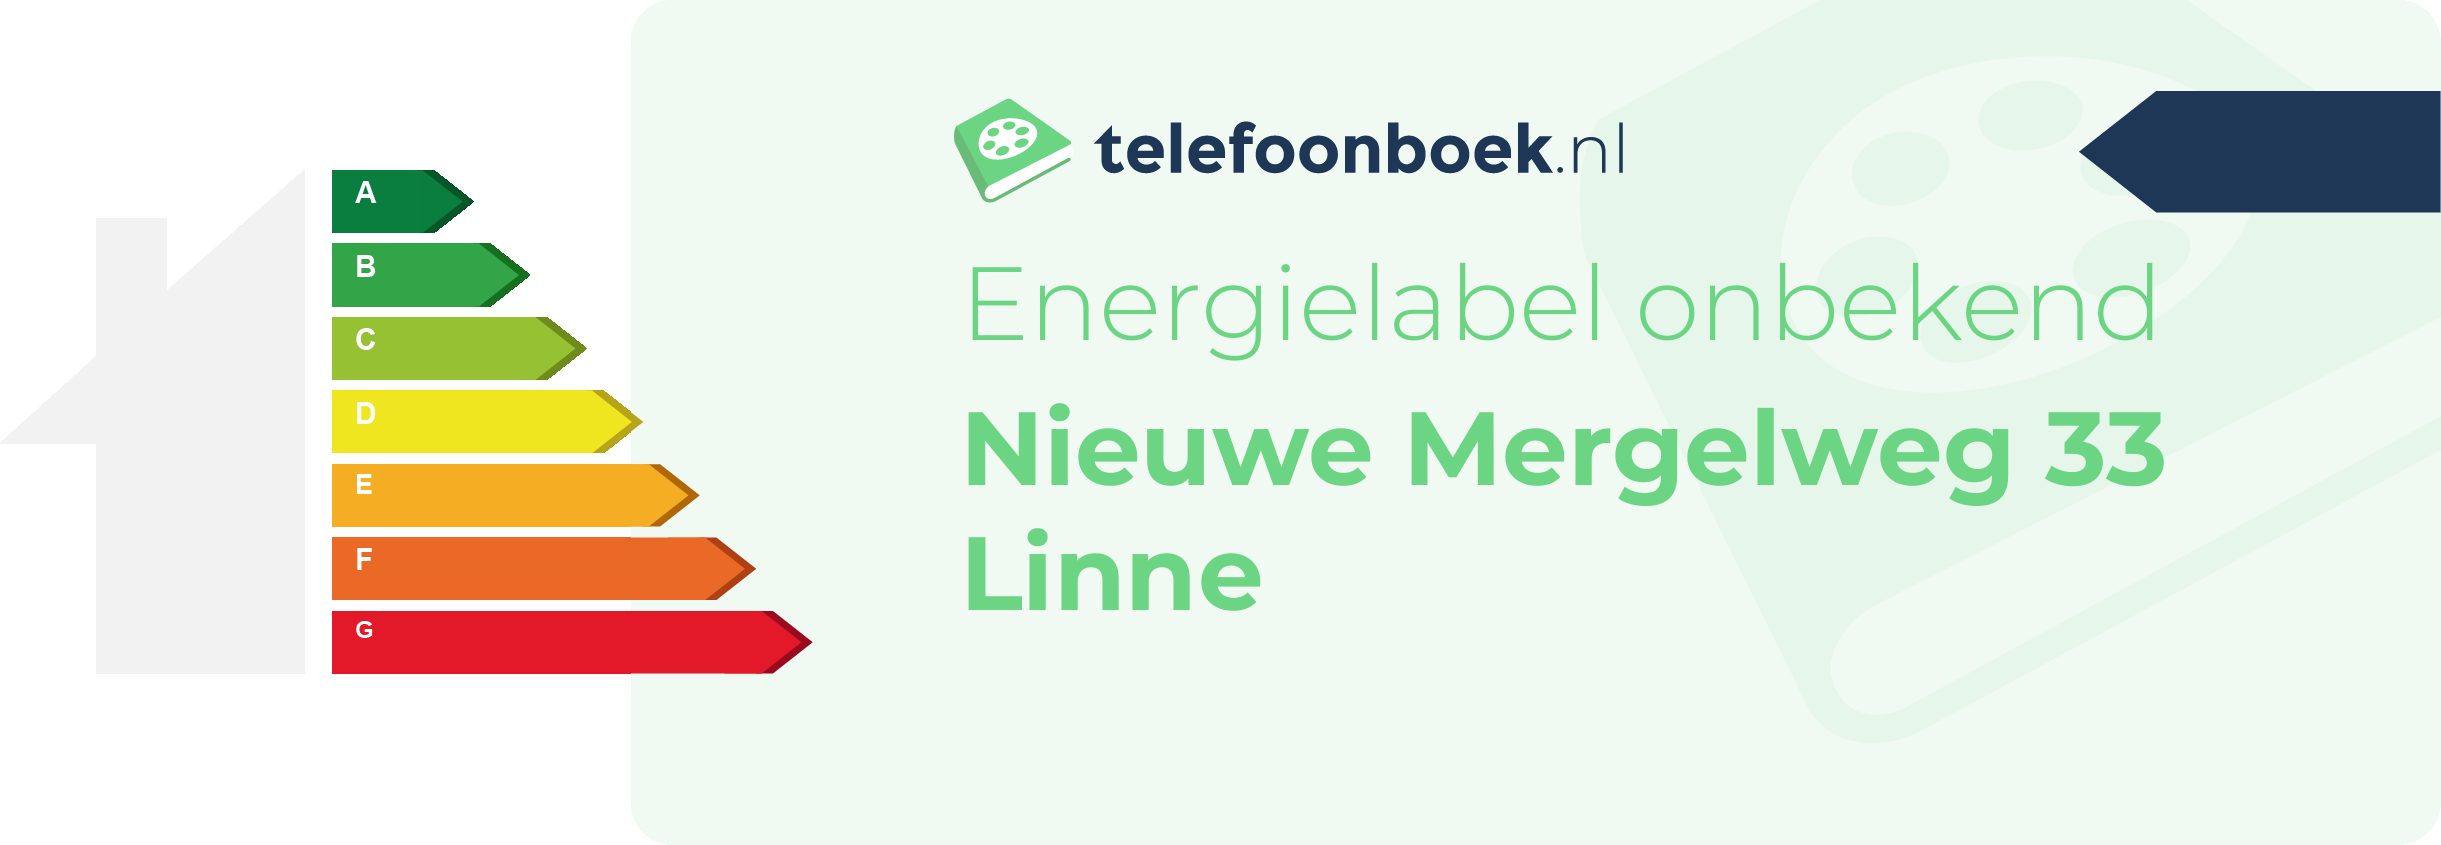 Energielabel Nieuwe Mergelweg 33 Linne